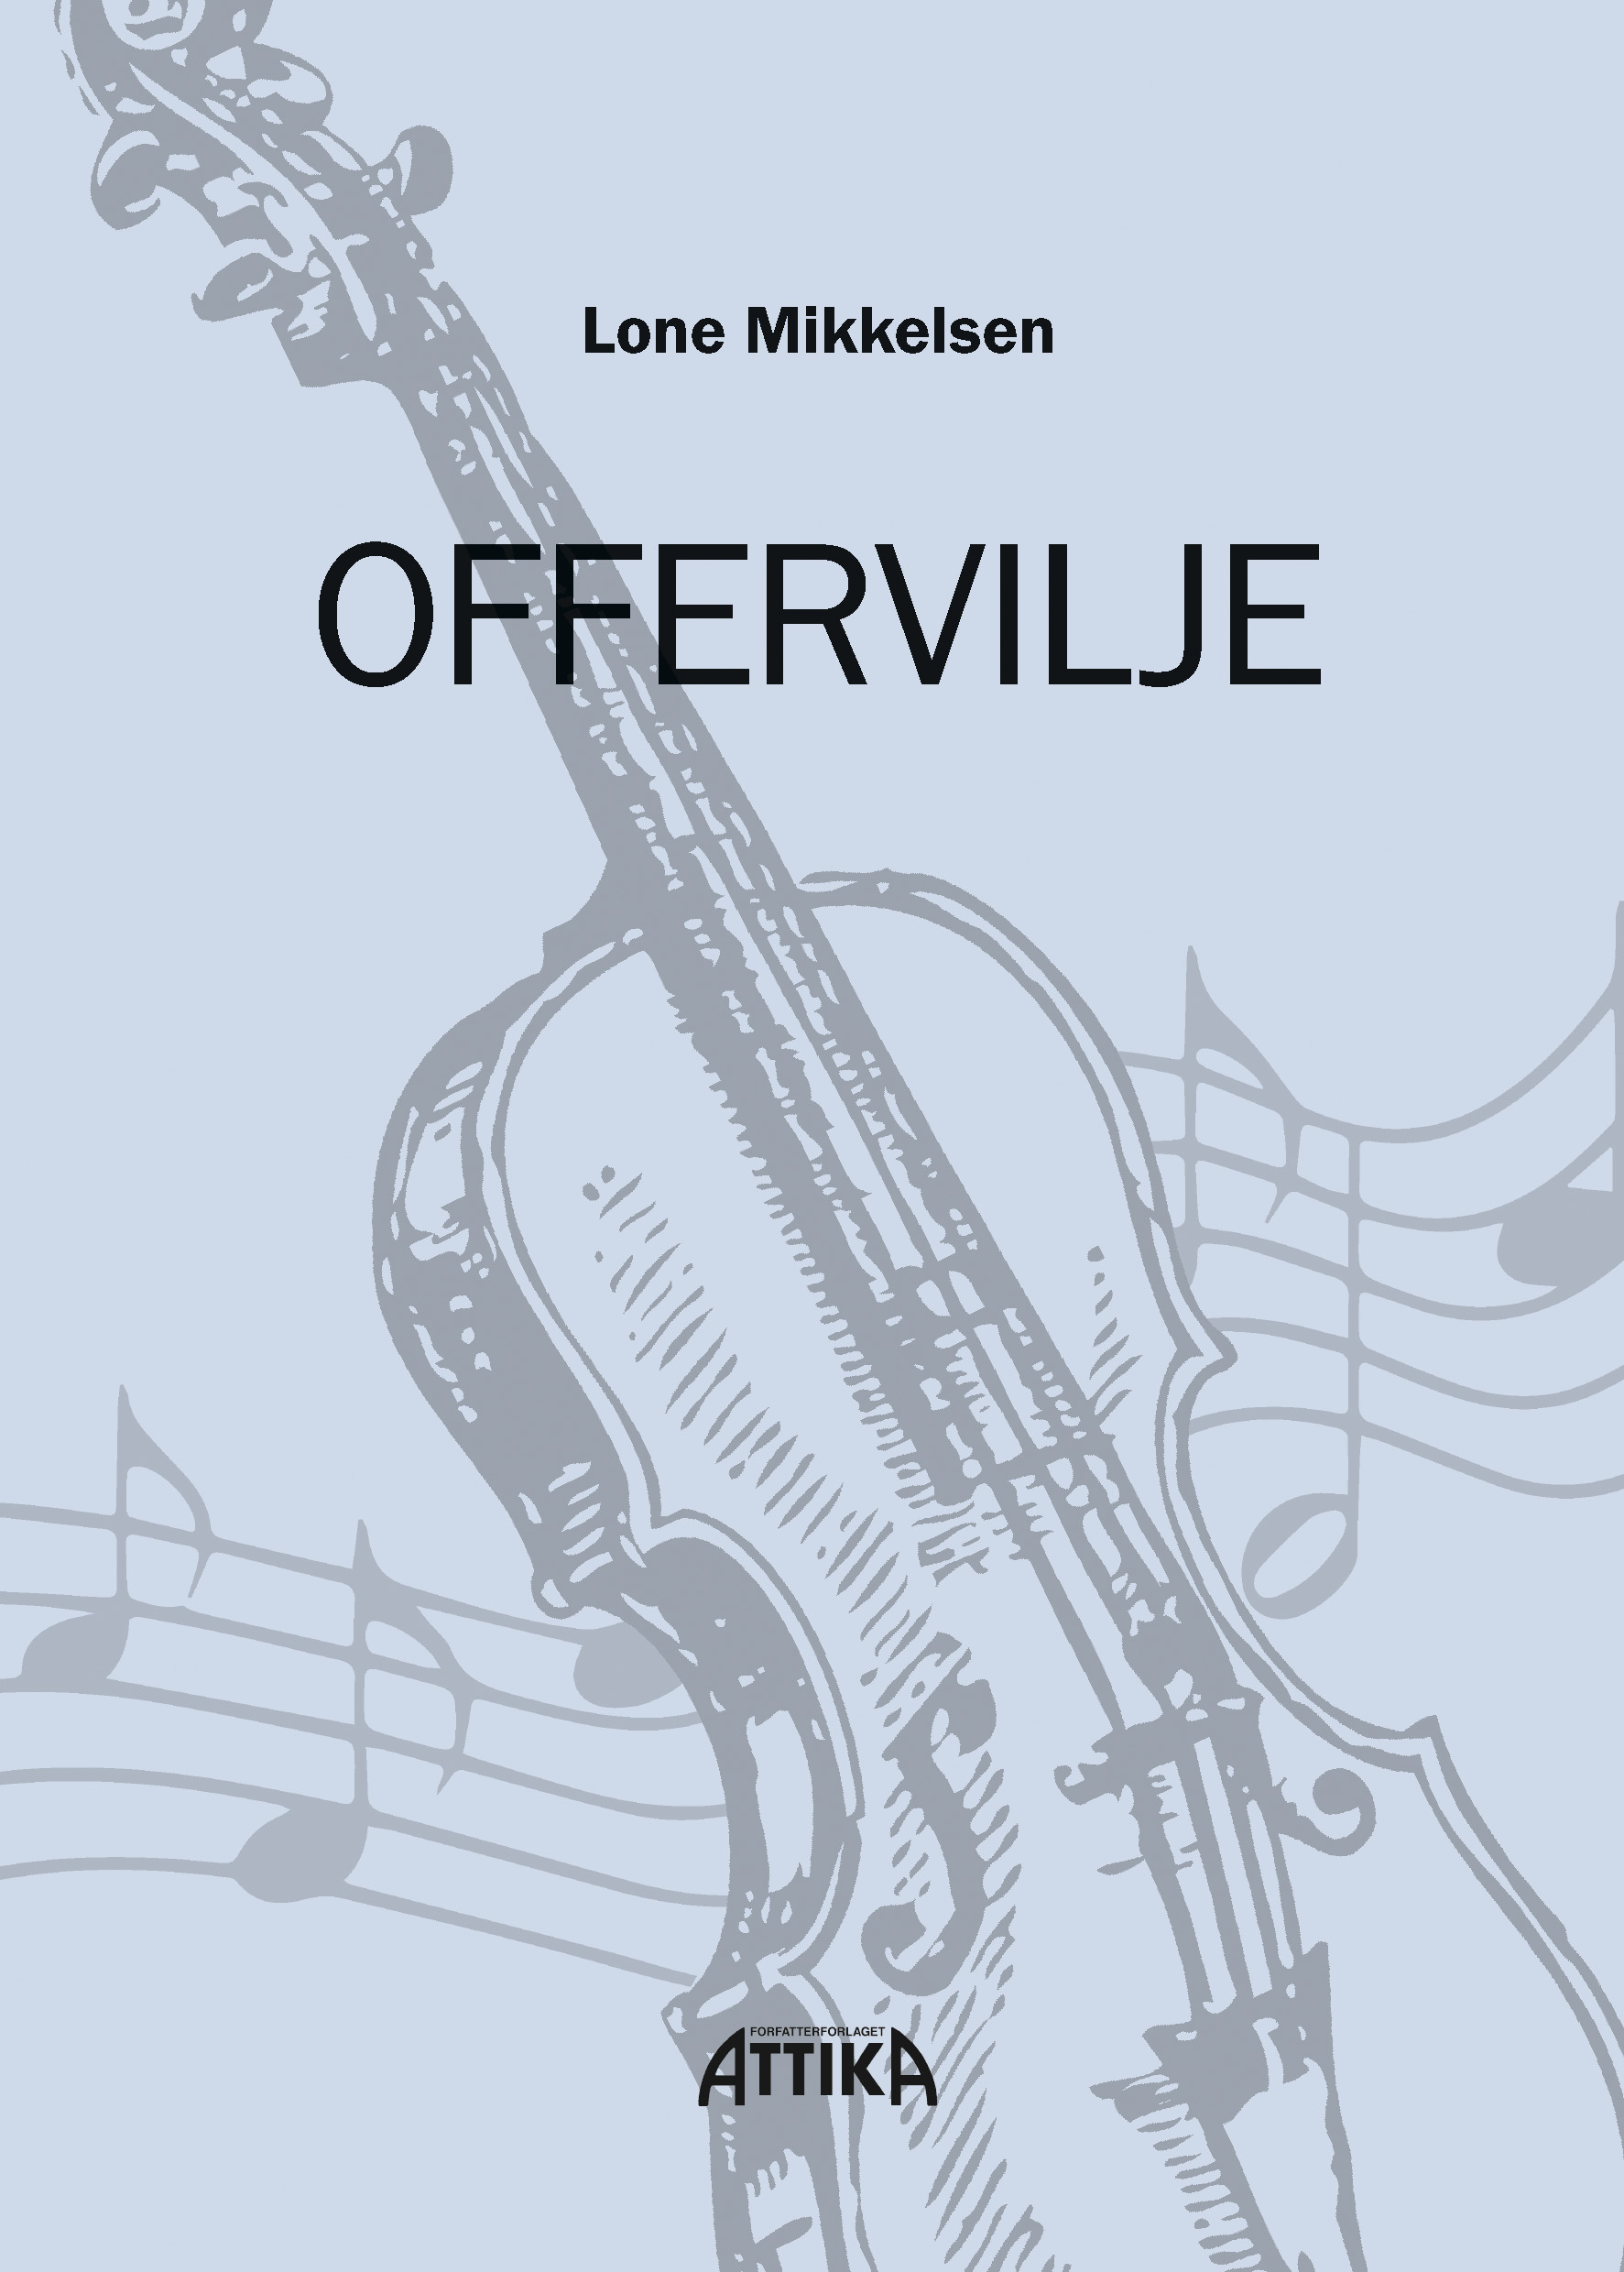 Lone Mikkelsen: Offervilje